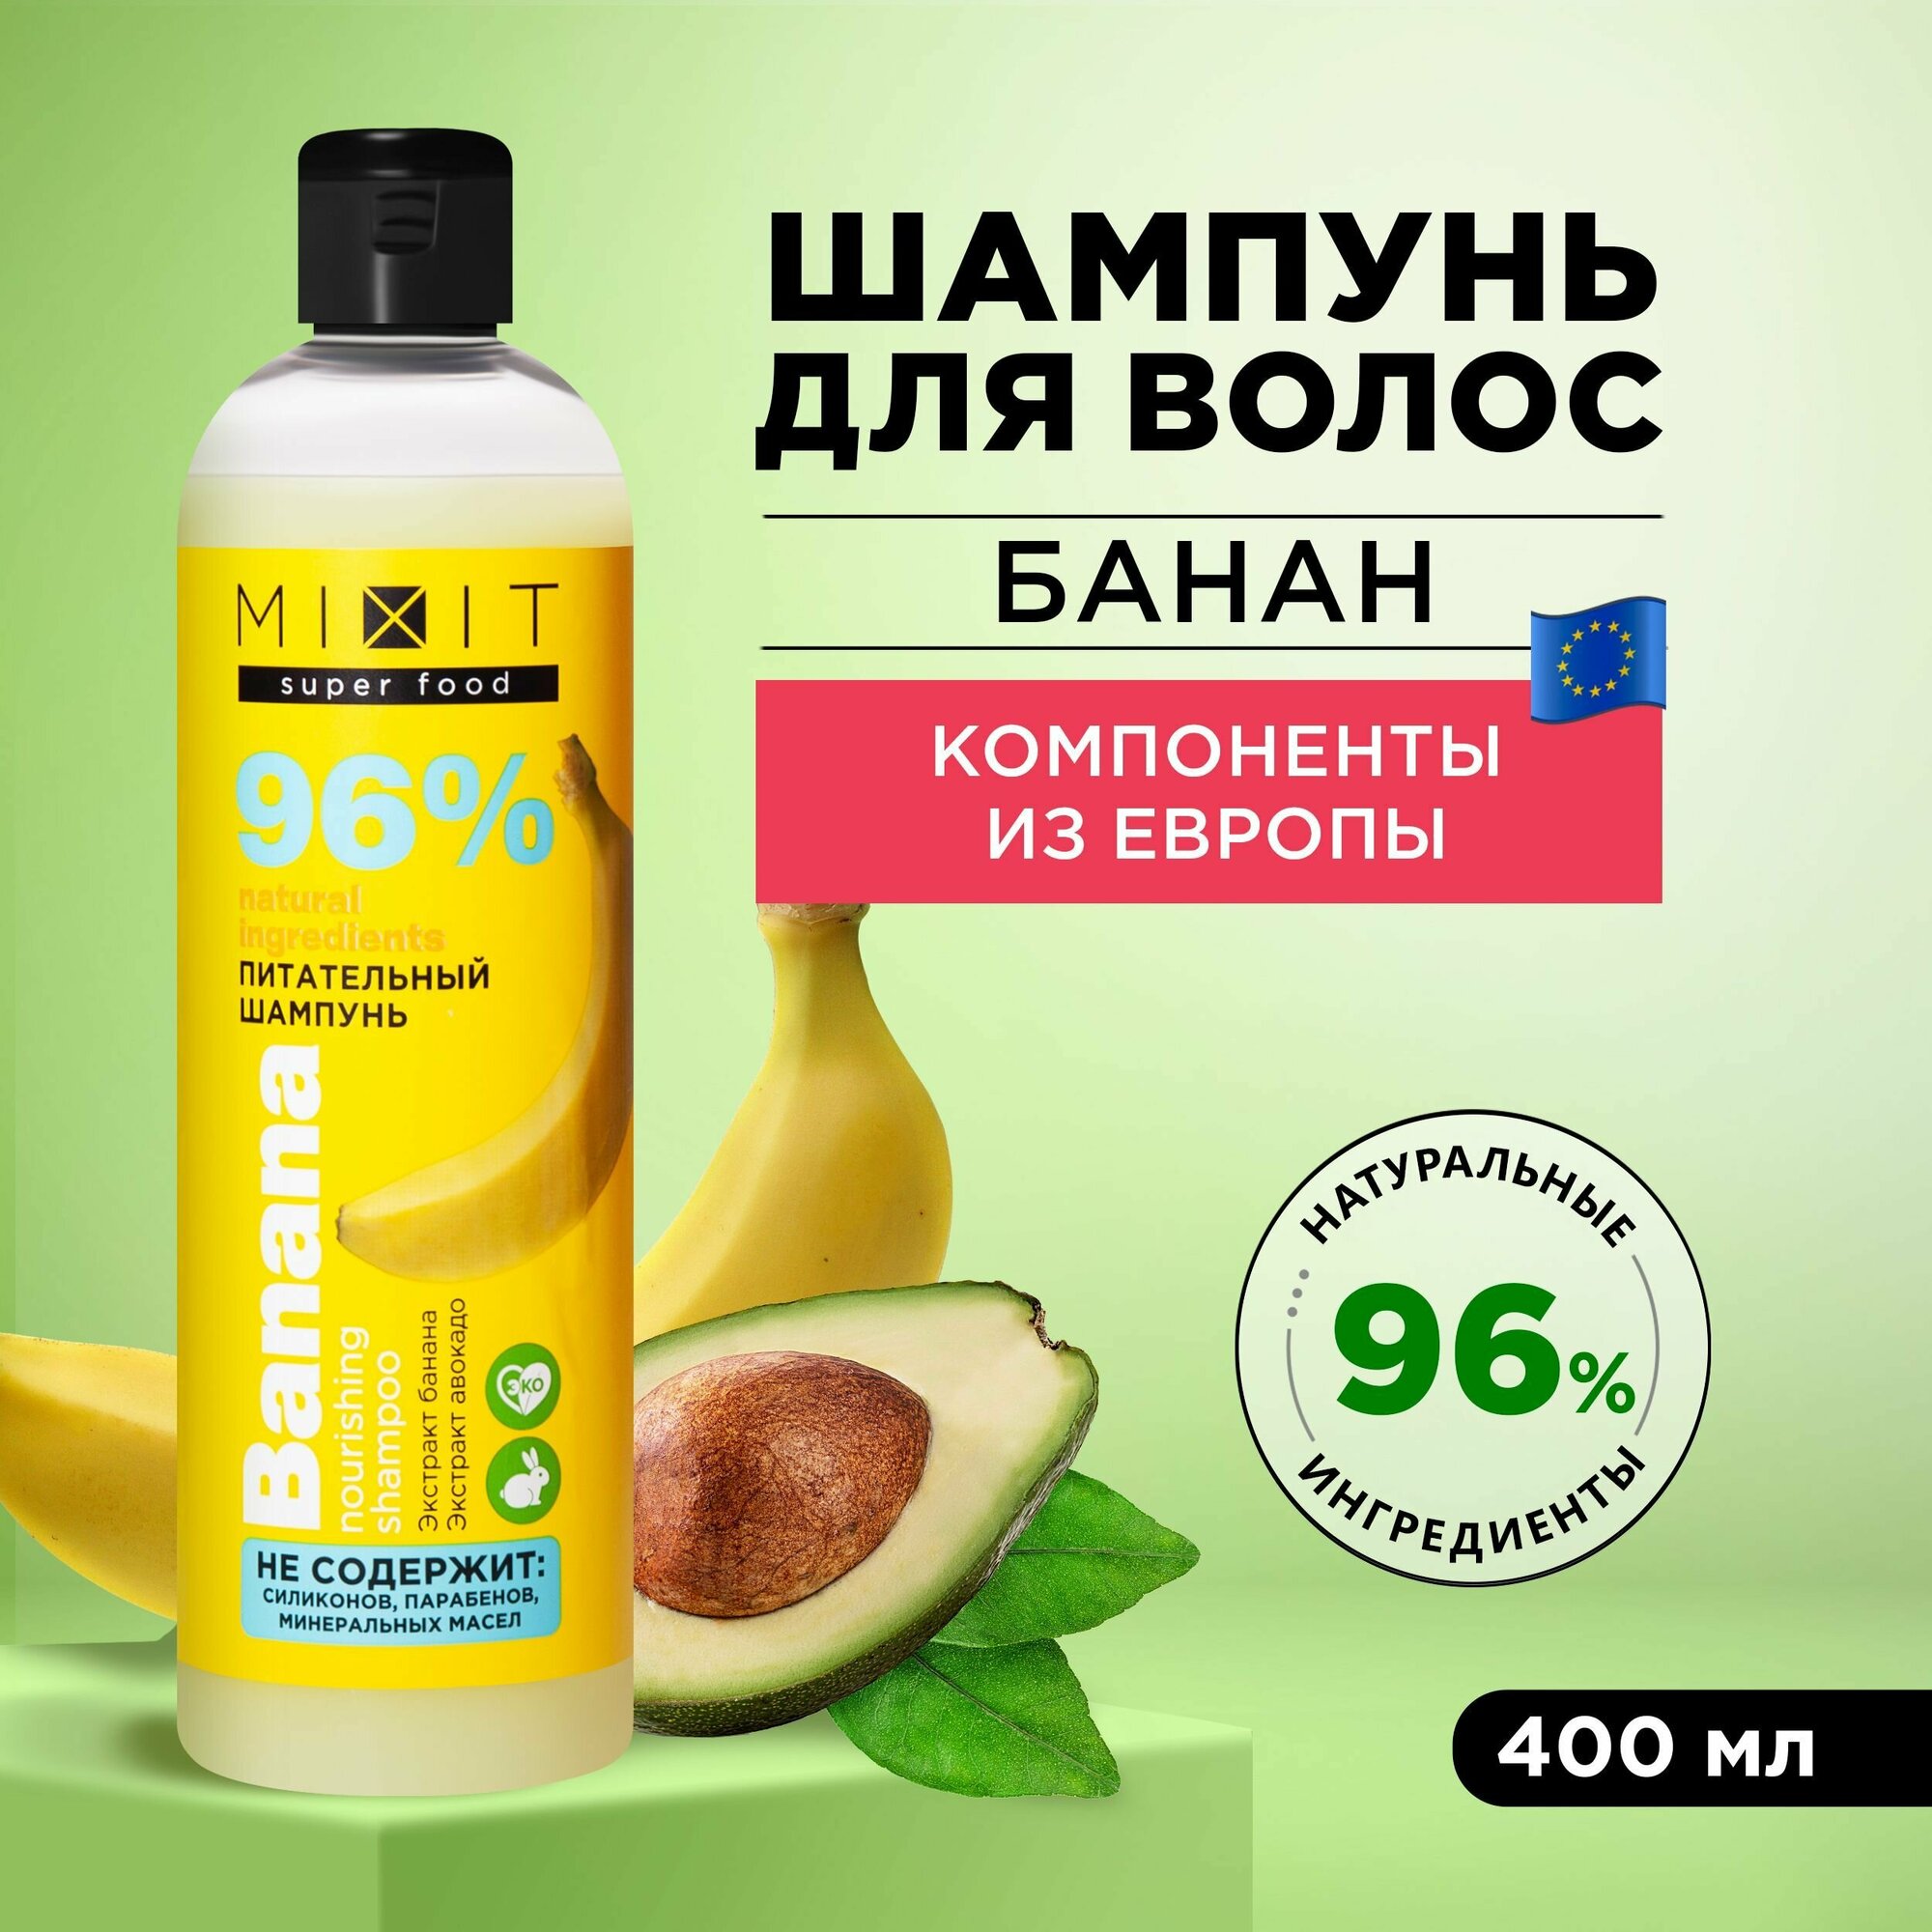 MIXIT Питательный шампунь для волос с экстрактом aвокадо и банана для восстановления SUPER FOOD, 400 мл